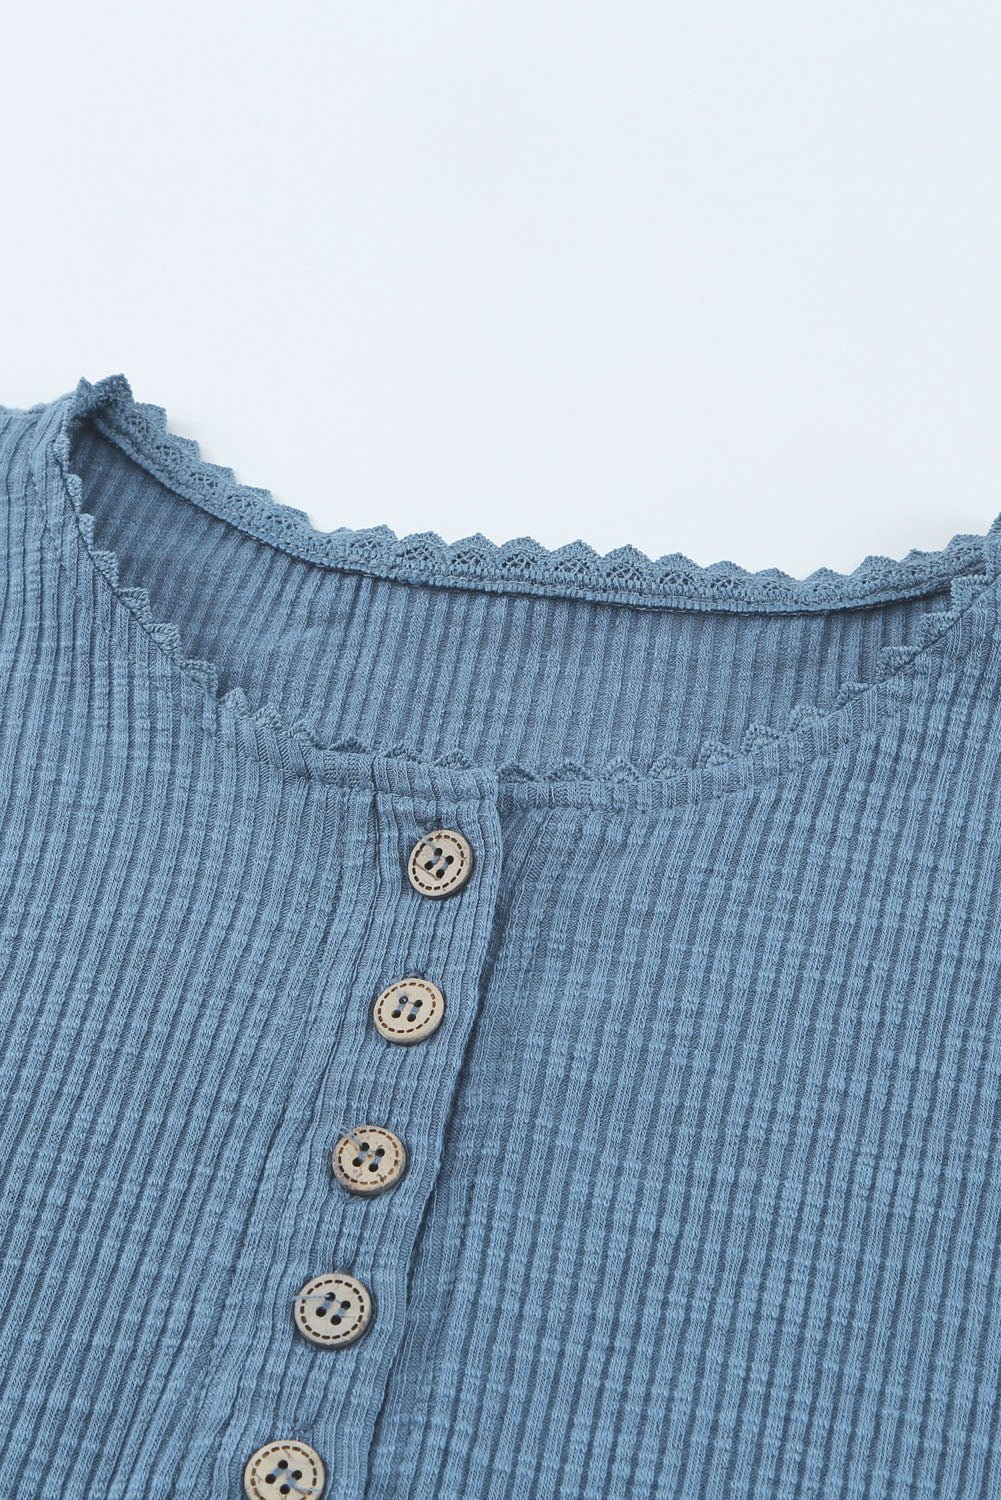 Crochet Lace Hem Sleeve Button Top - WESTERN STYLIN'